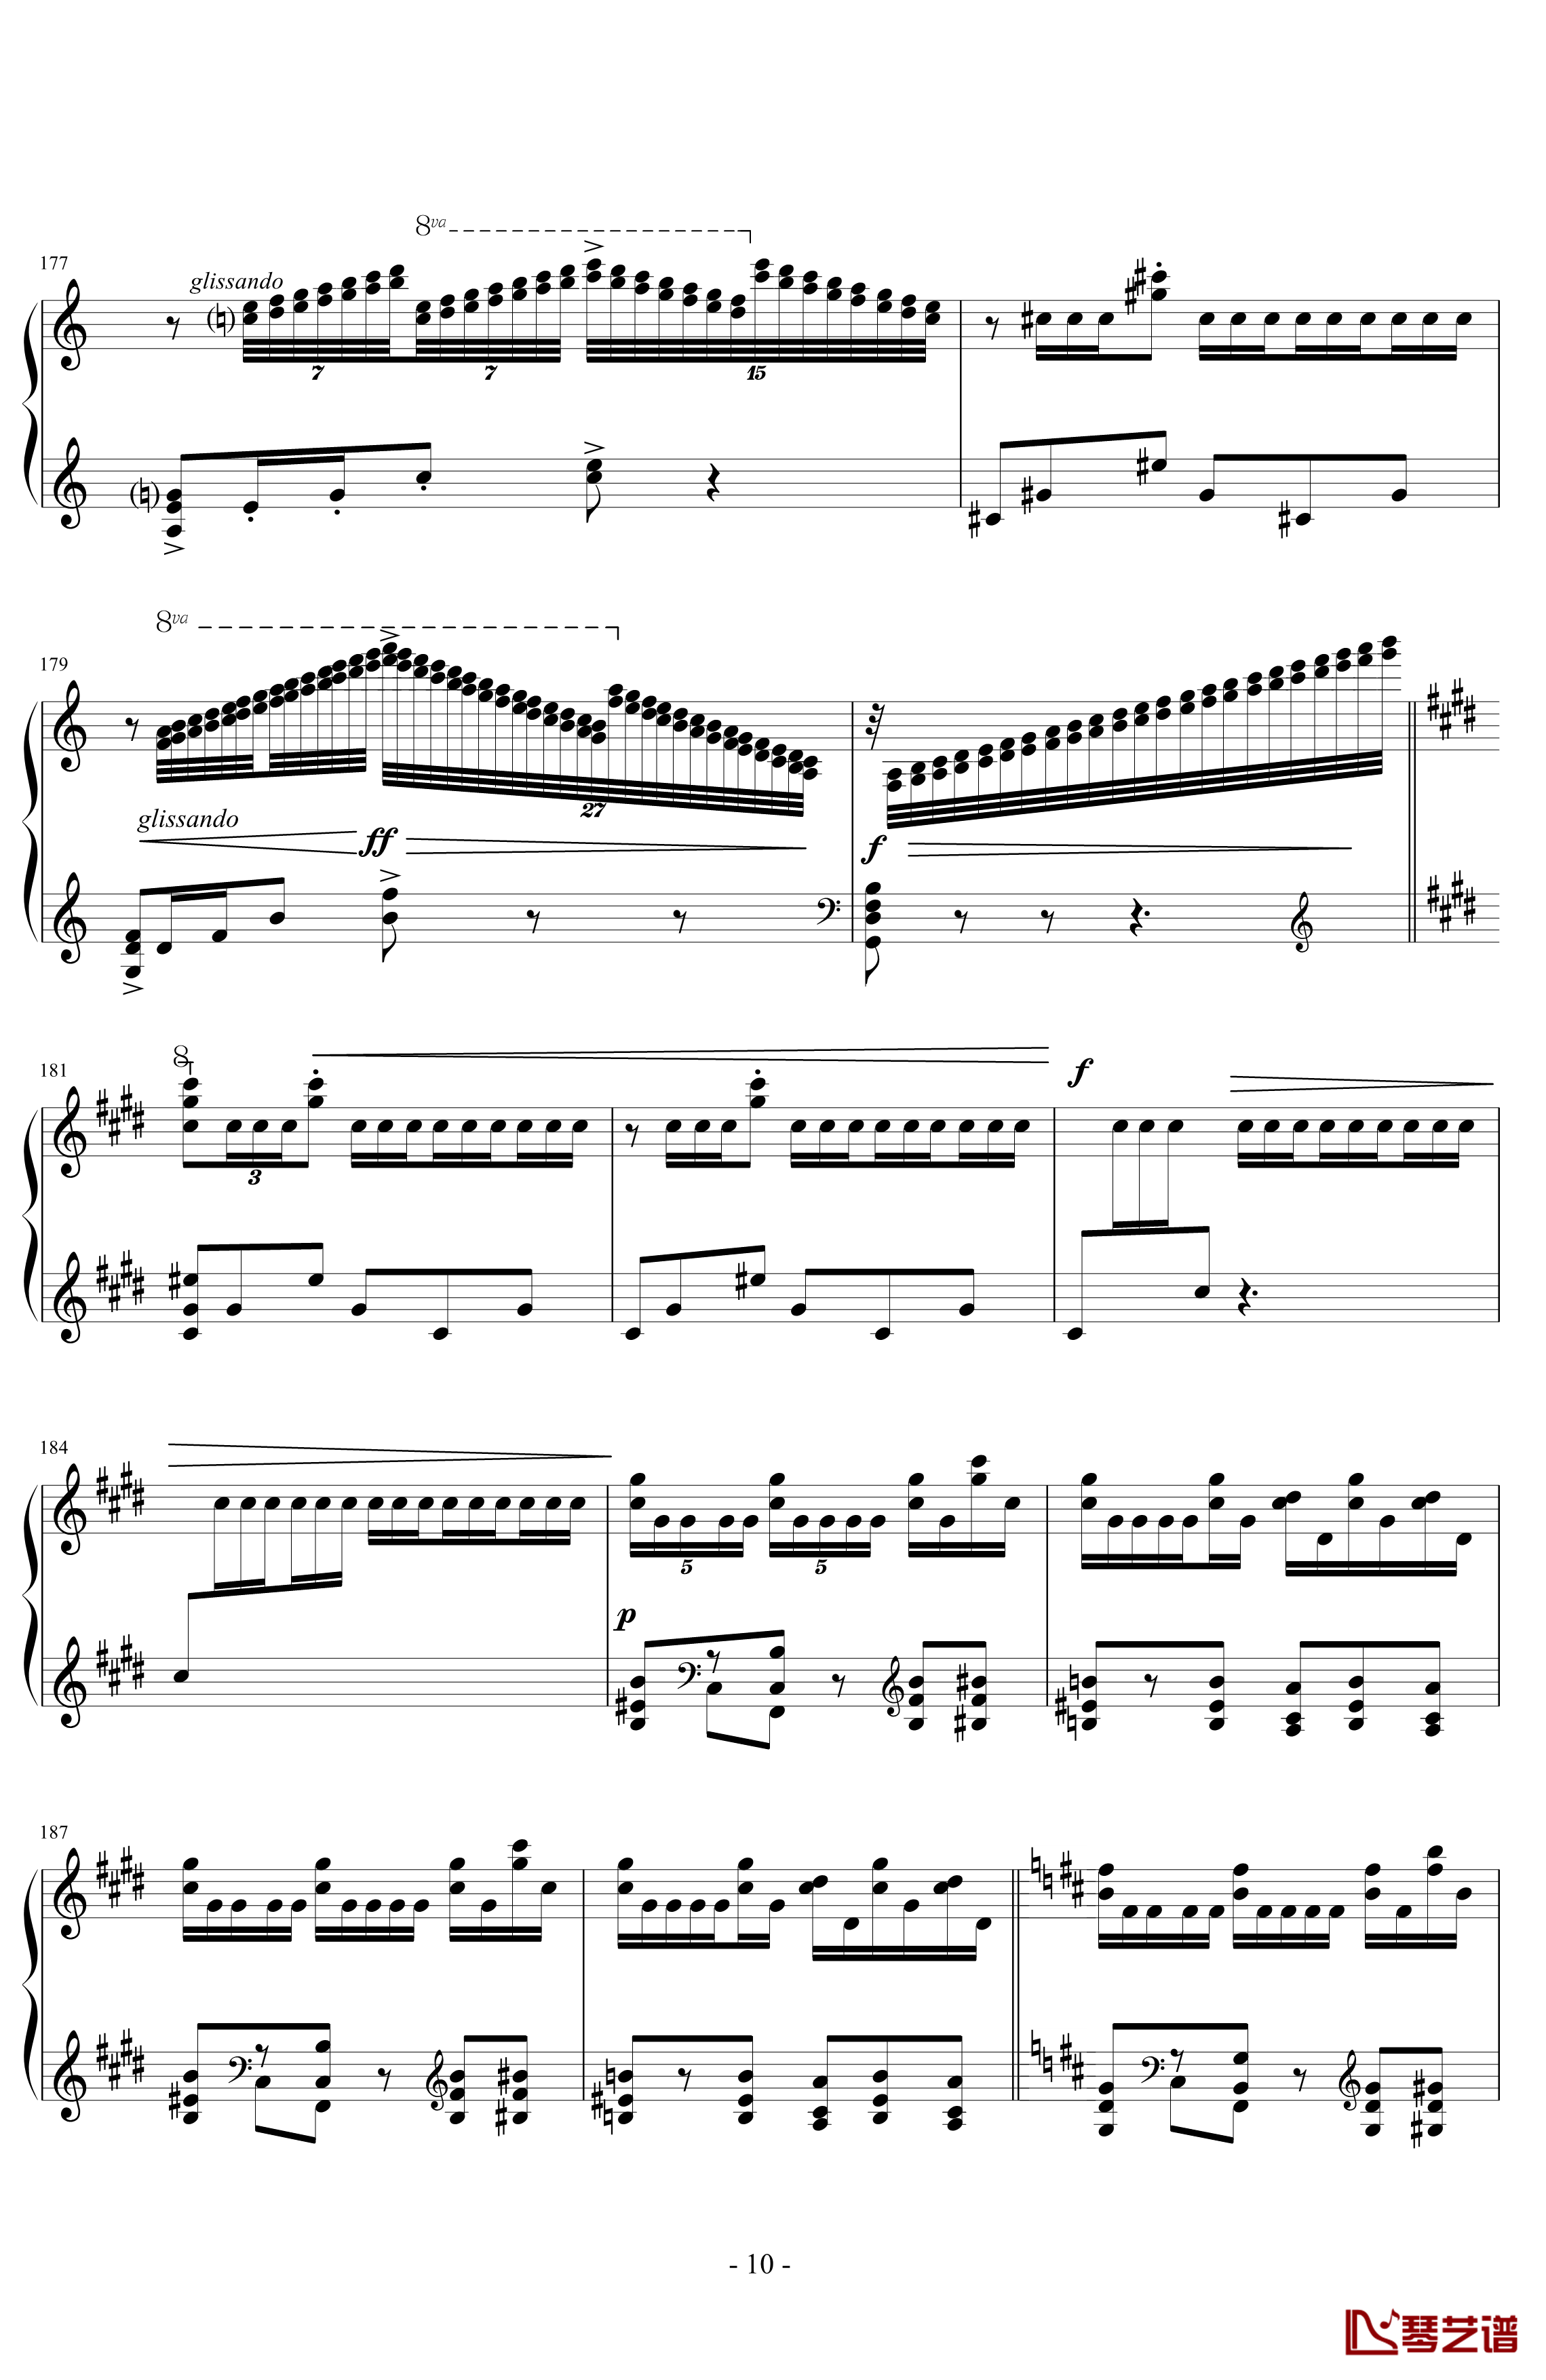 丑角的晨歌钢琴谱-组曲第4首-拉威尔-Ravel10